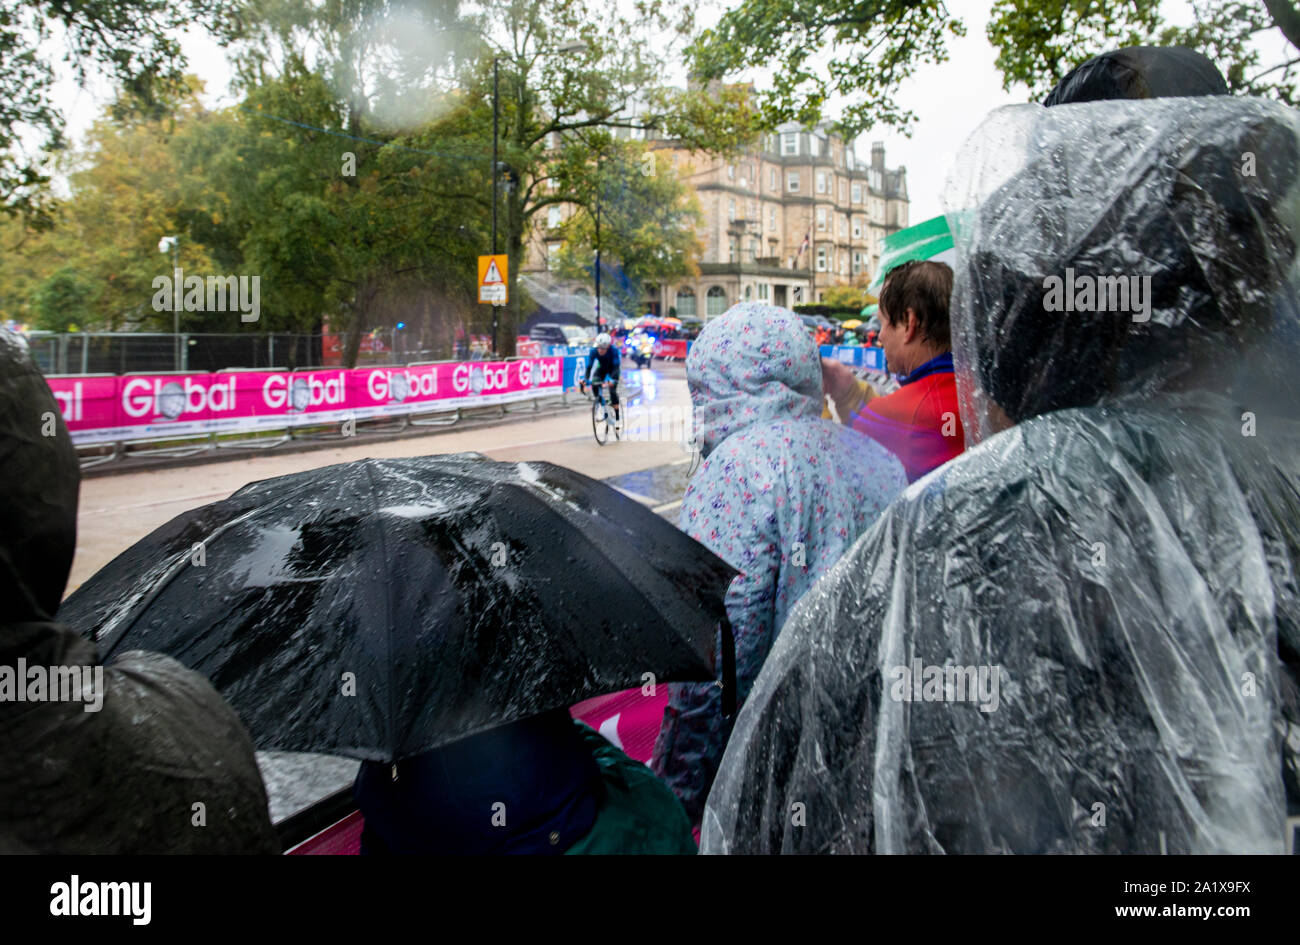 Fans auf Radfahrer vorbei im schweren Regen am abschließenden Tag der UCI Rad WM, Harrogate, UK, 29. September 2019 Stockfoto